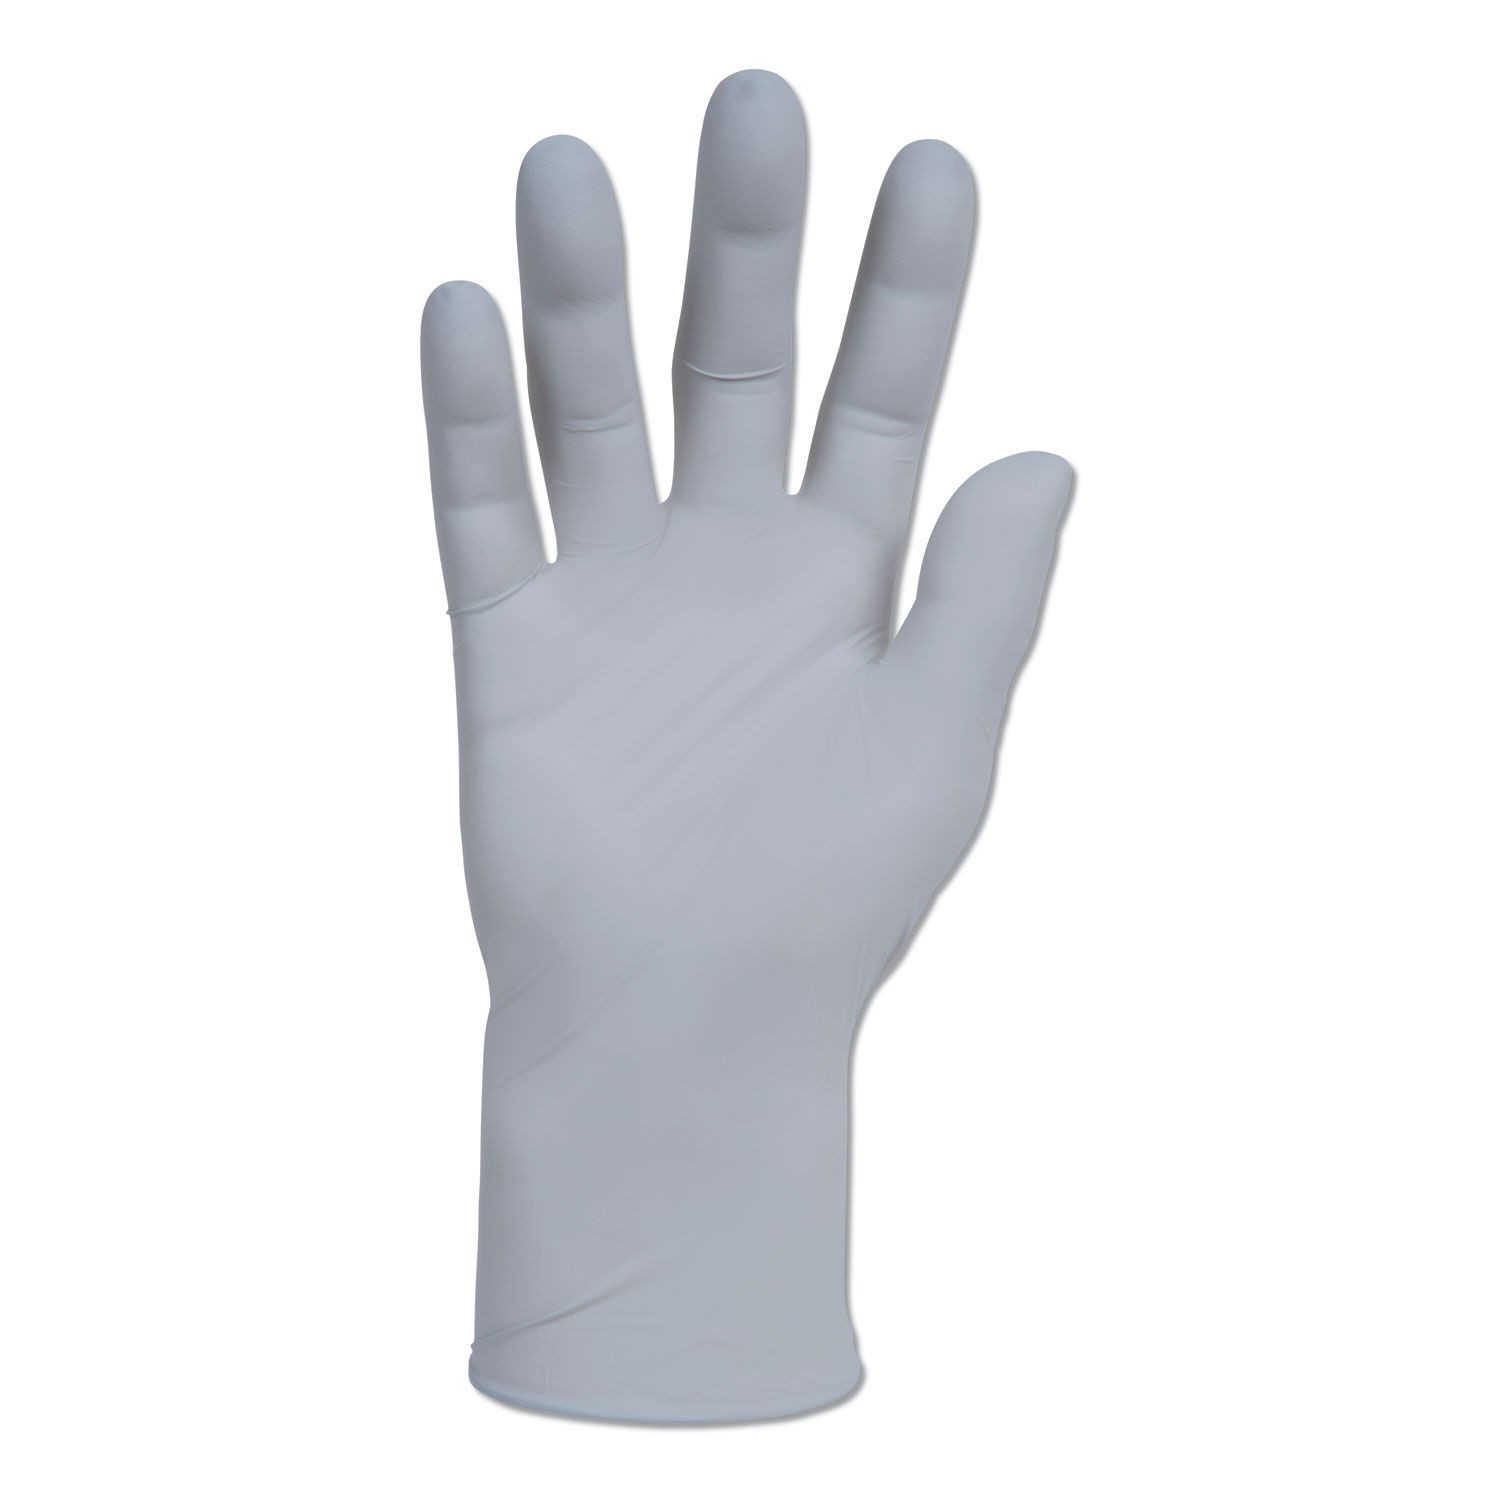 Kleenguard G10 Nitrile Gloves, 250mm Length, Large, Gray 150/Box